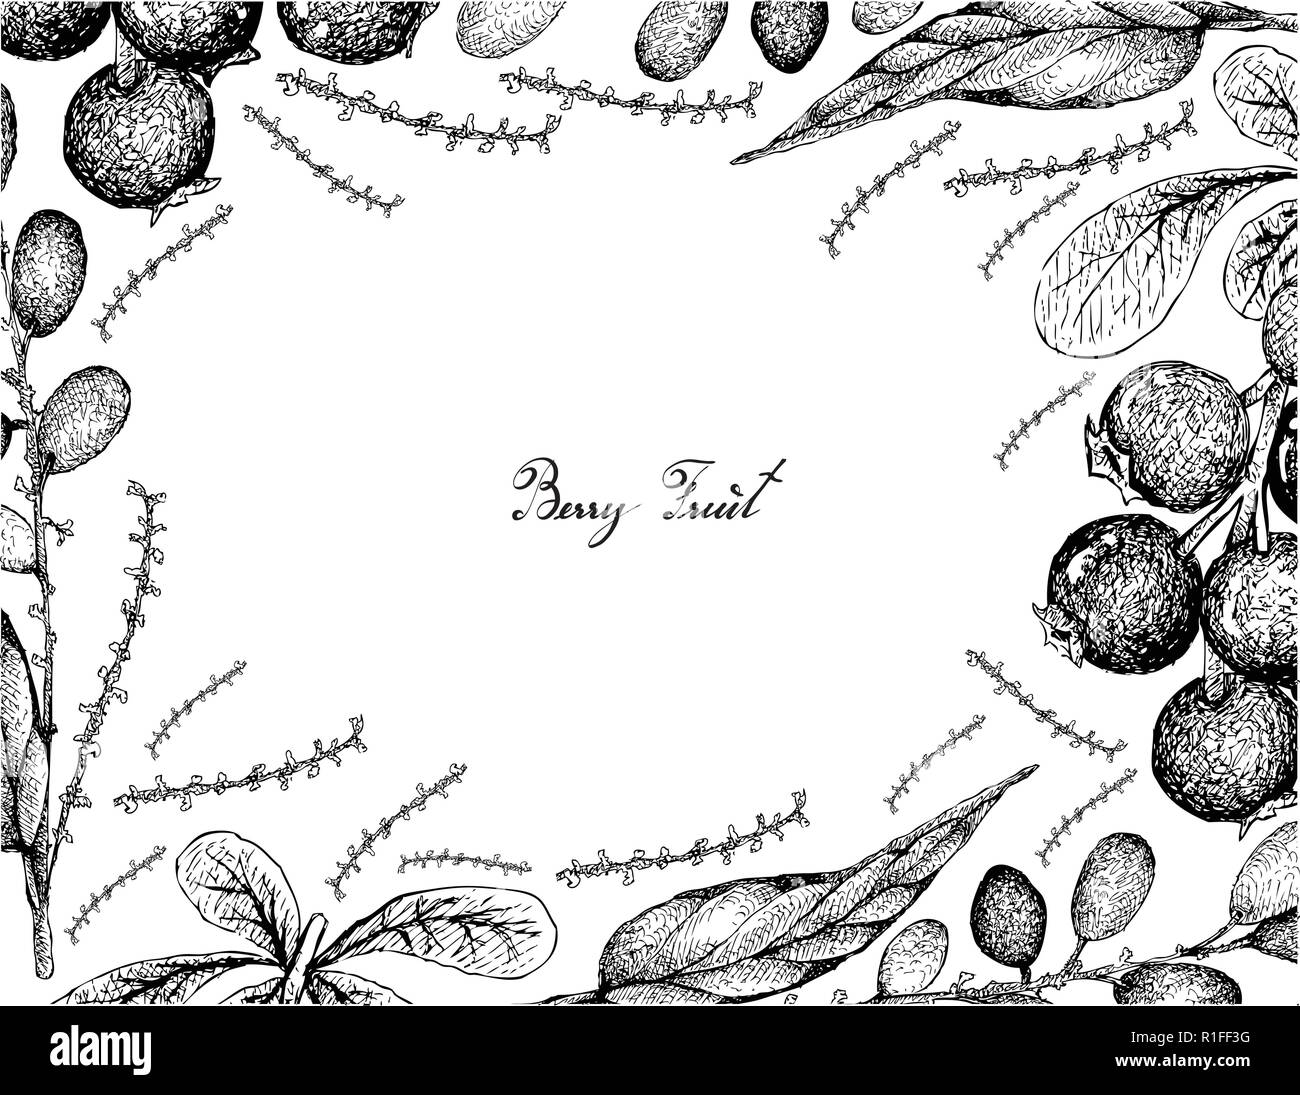 Beerenfrüchte, Illustration von Hand gezeichnete Skizze und Jostaberries Lepisanthes Rubiginosa Früchte isoliert auf weißem Hintergrund. Stock Vektor